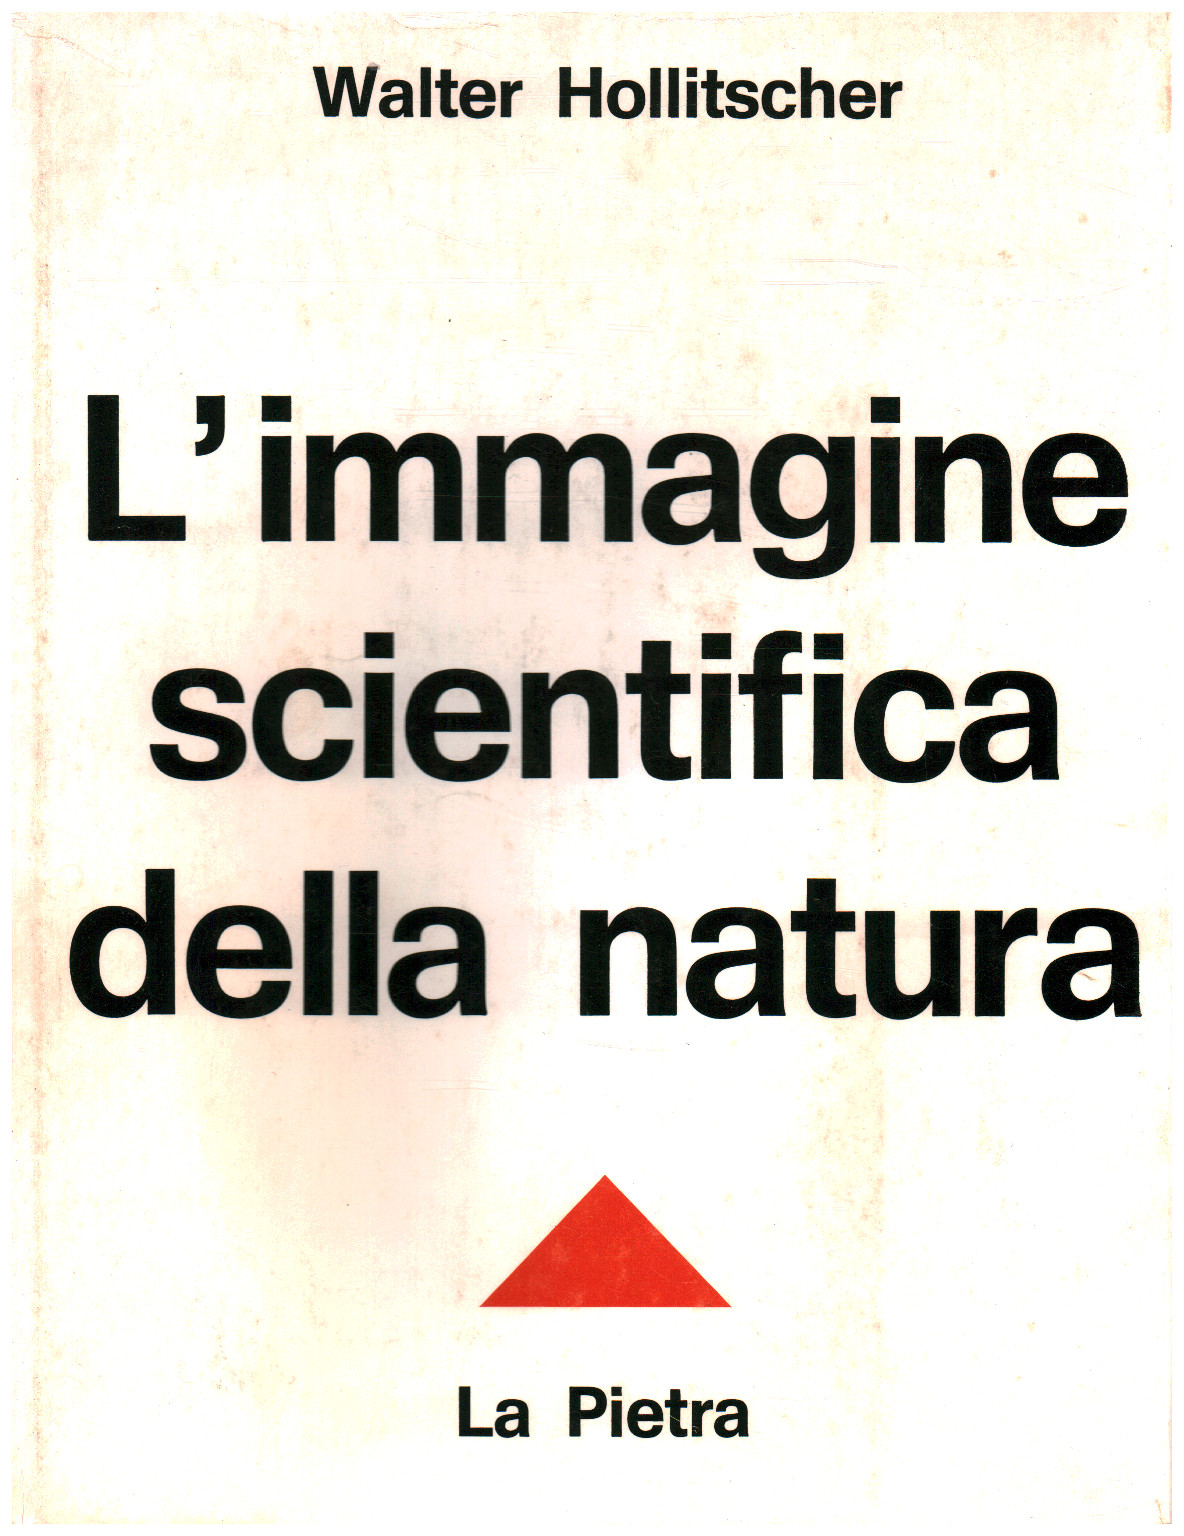 L immagine scientifica della natura, s.a.